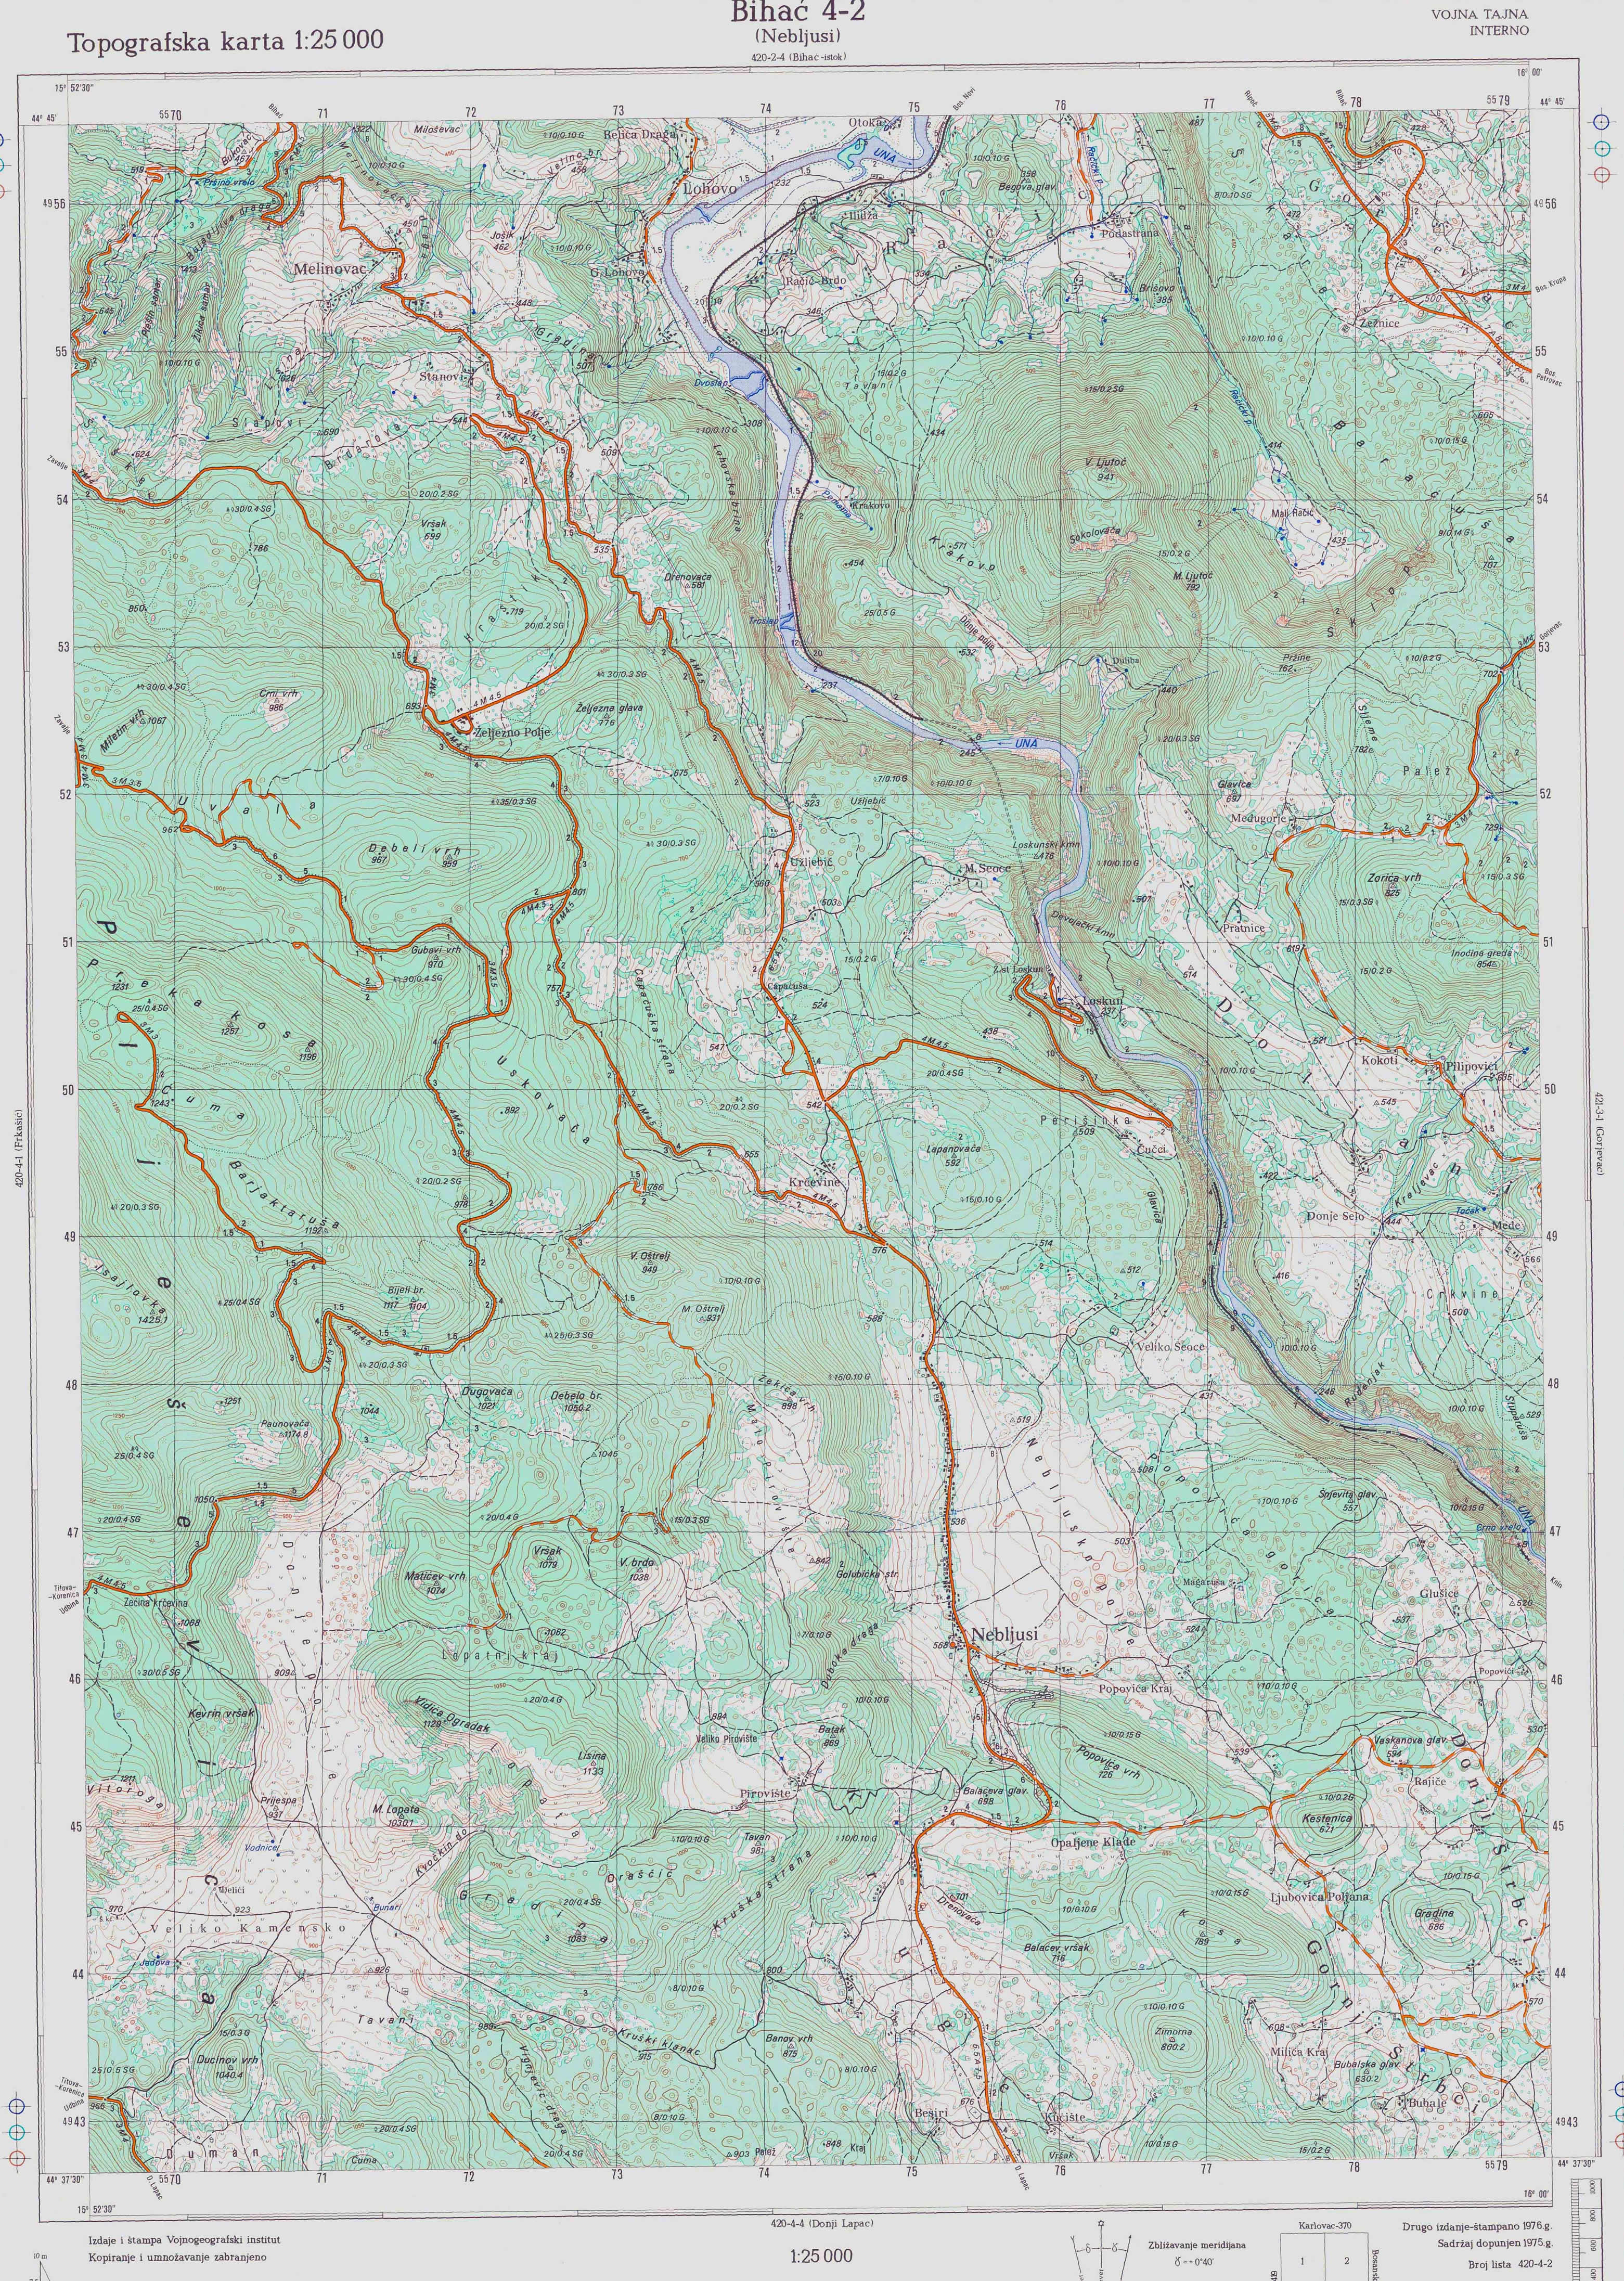  topografska karta BiH 25000 JNA  Bihać